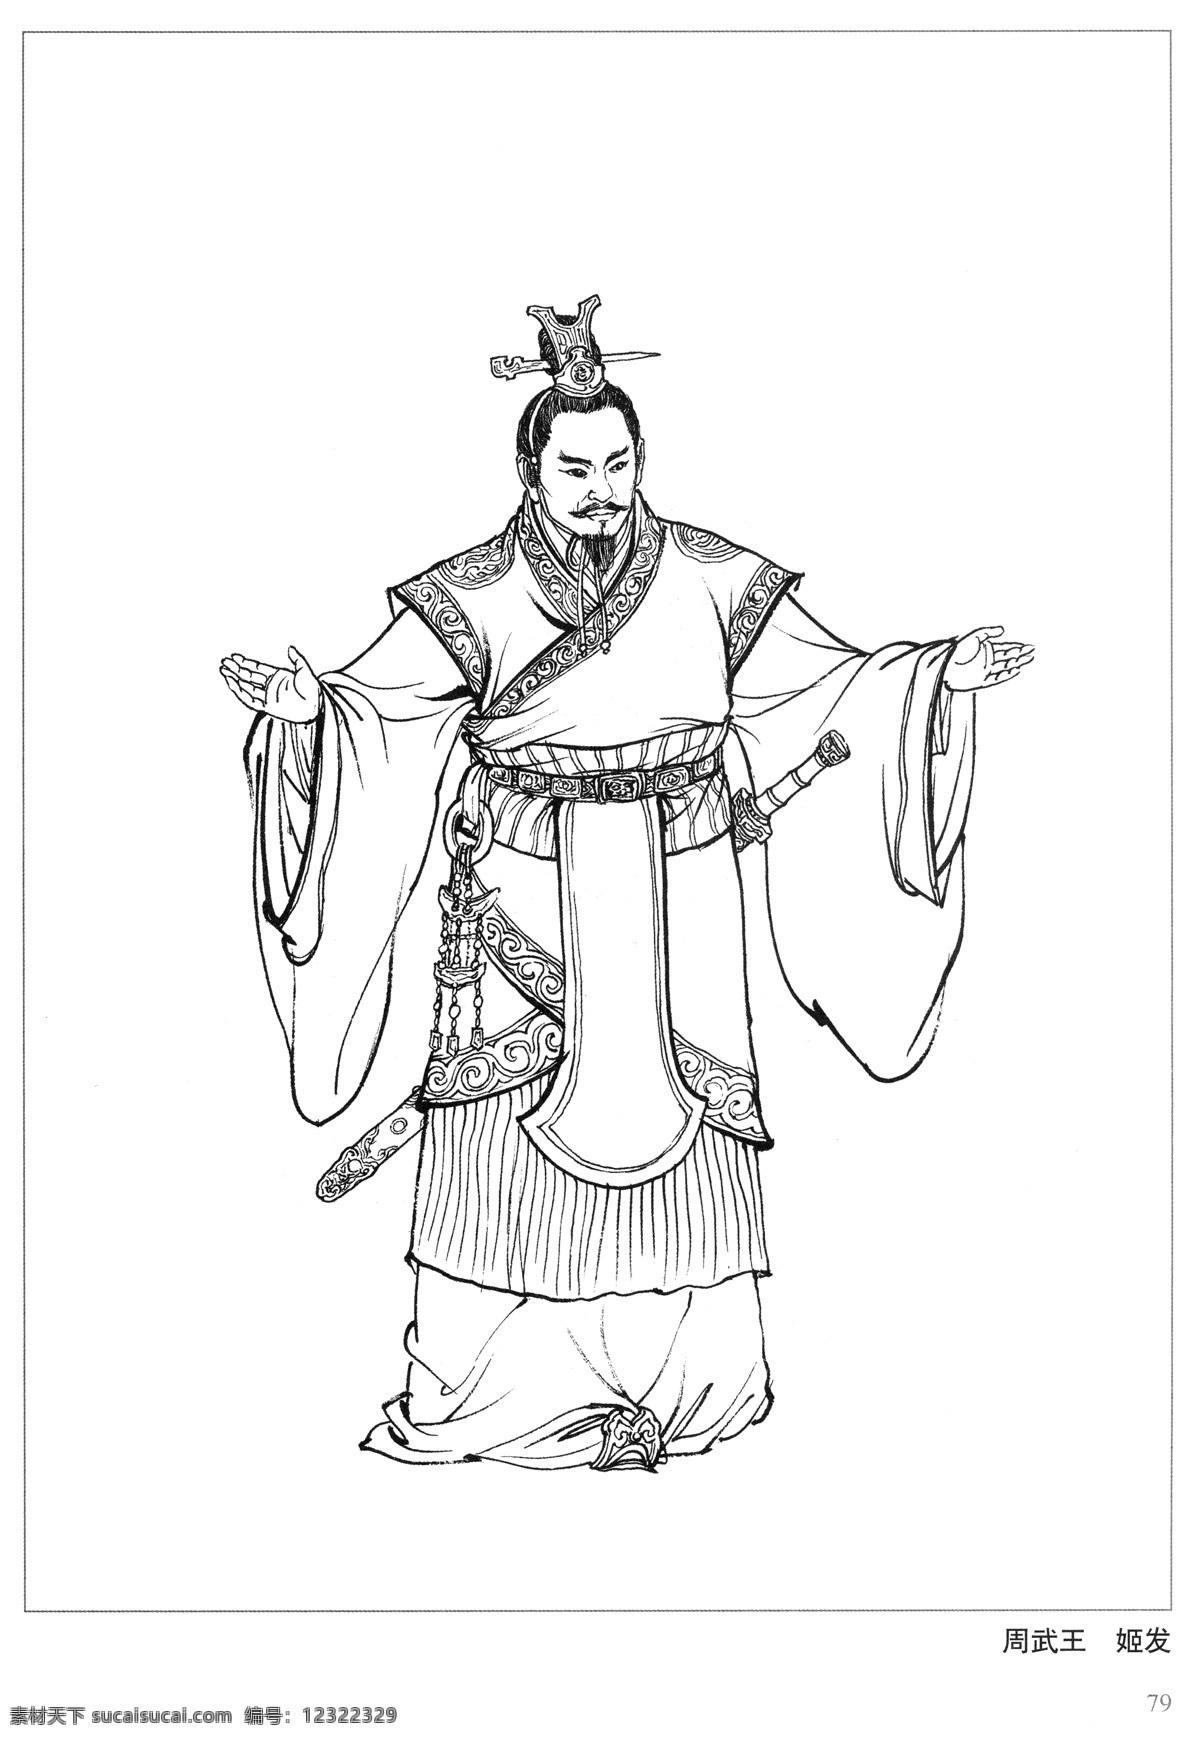 周武王 姬发 封神演义 古代 神仙 白描 人物 图 文化艺术 传统文化